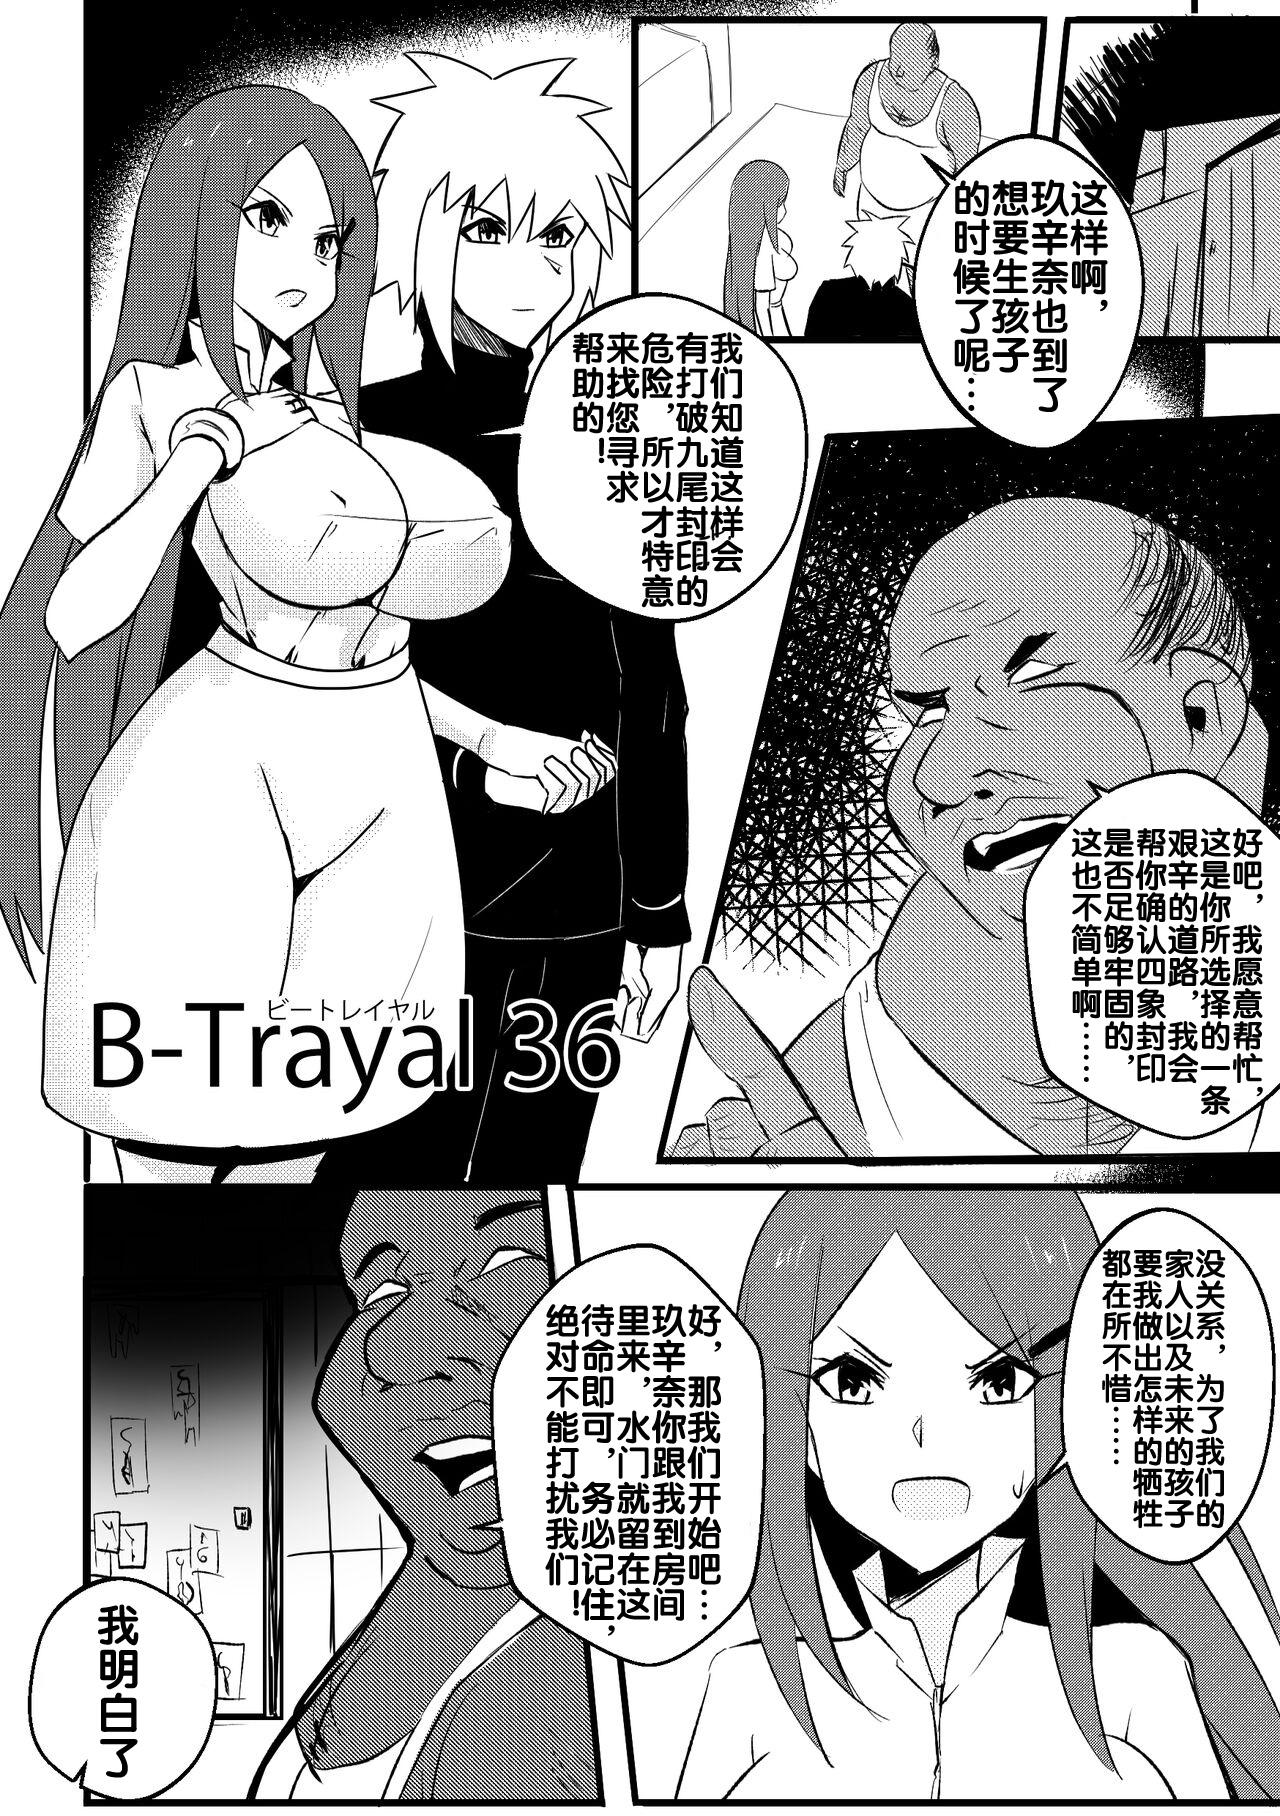 Tesao B-Trayal 36 旋涡玖辛奈 - Naruto Tan - Picture 3